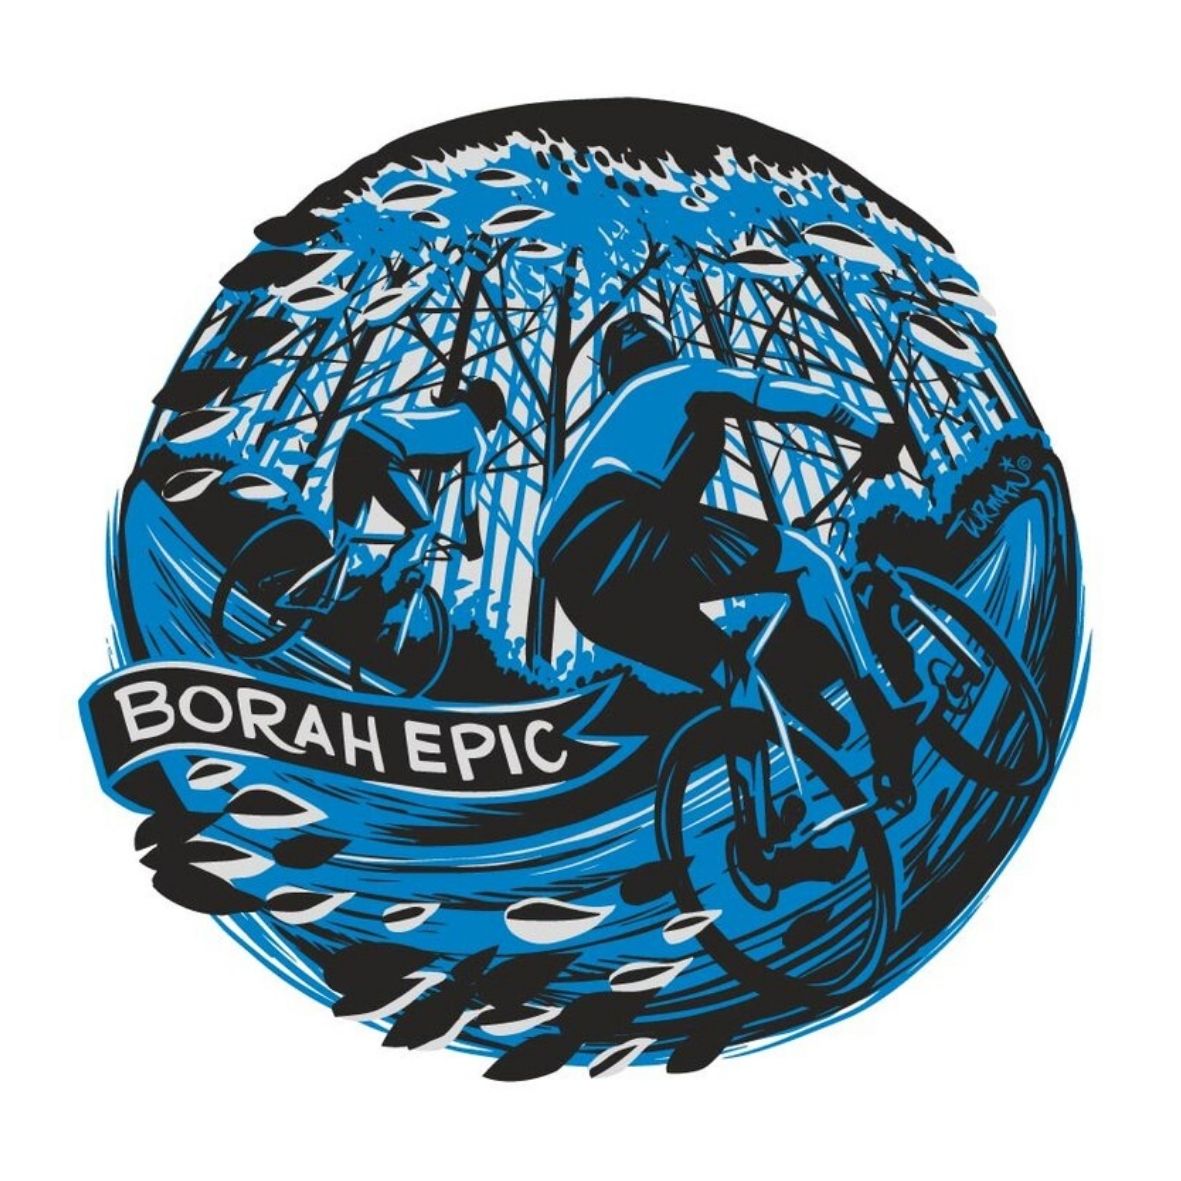 Borah Epic logo